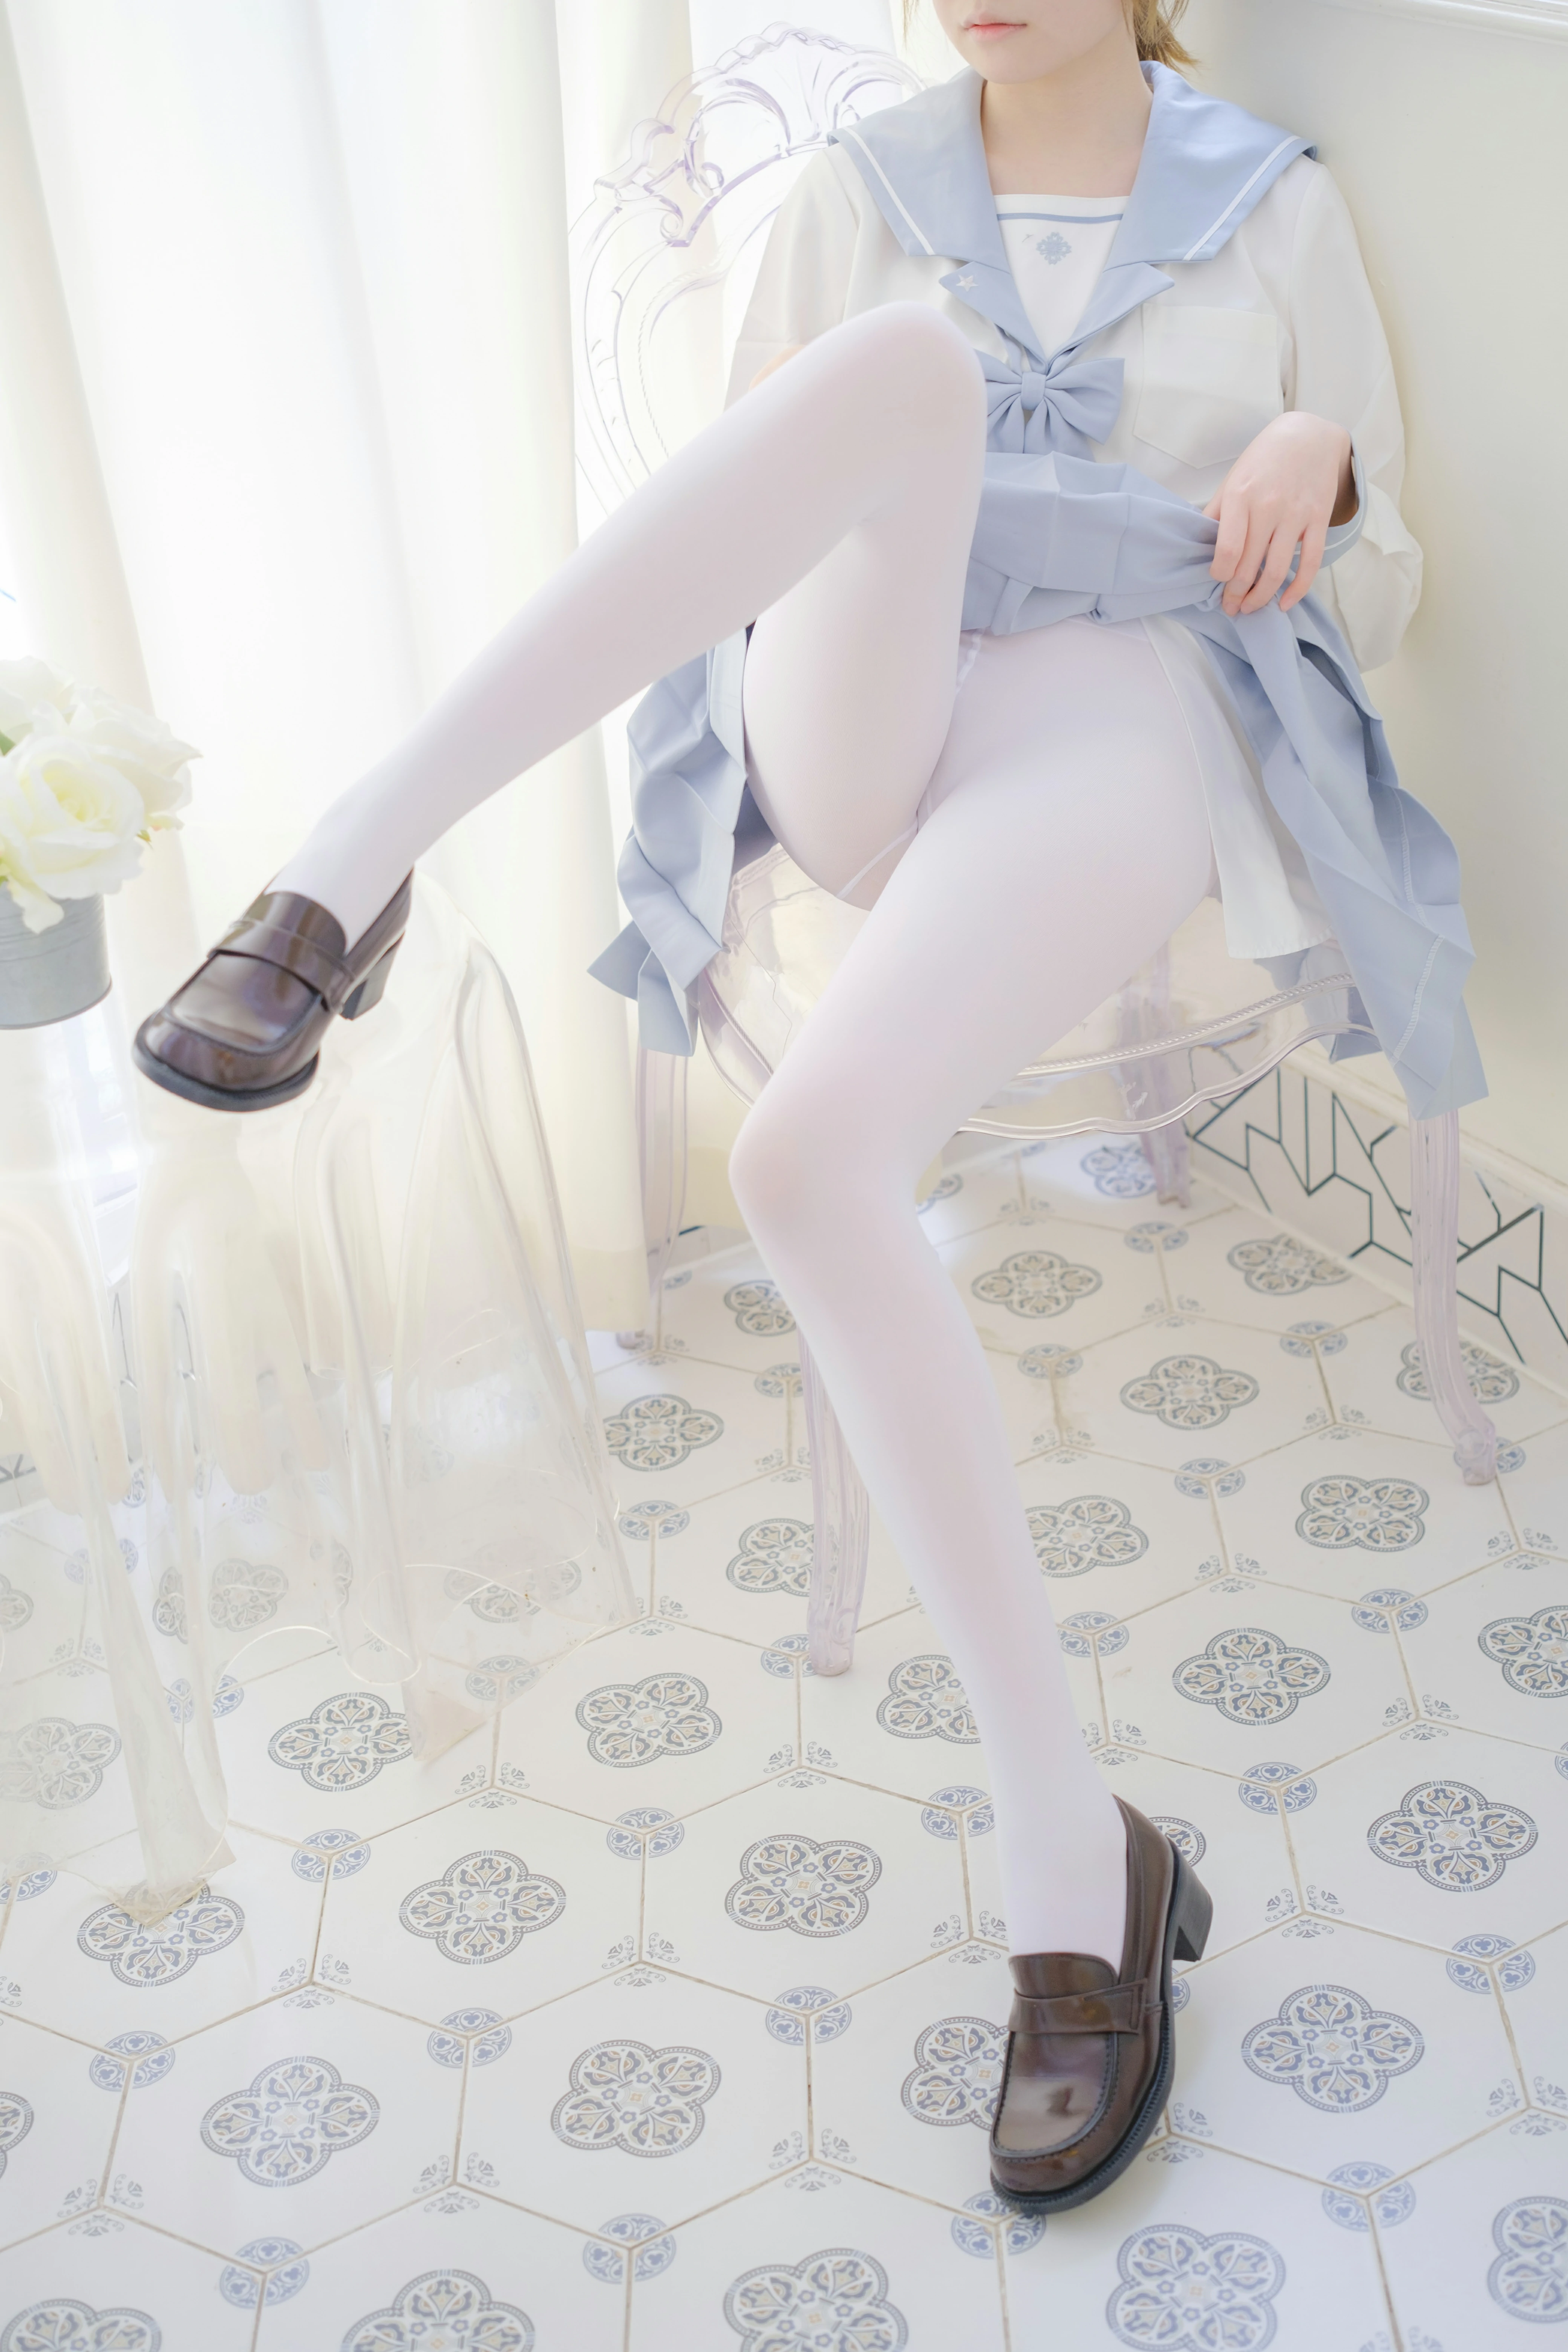 [森萝财团]GZAY4 酒店阳台上的JK制服小萝莉 白色衬衫与灰色短裙加白色丝袜美腿性感私房写真集,0024